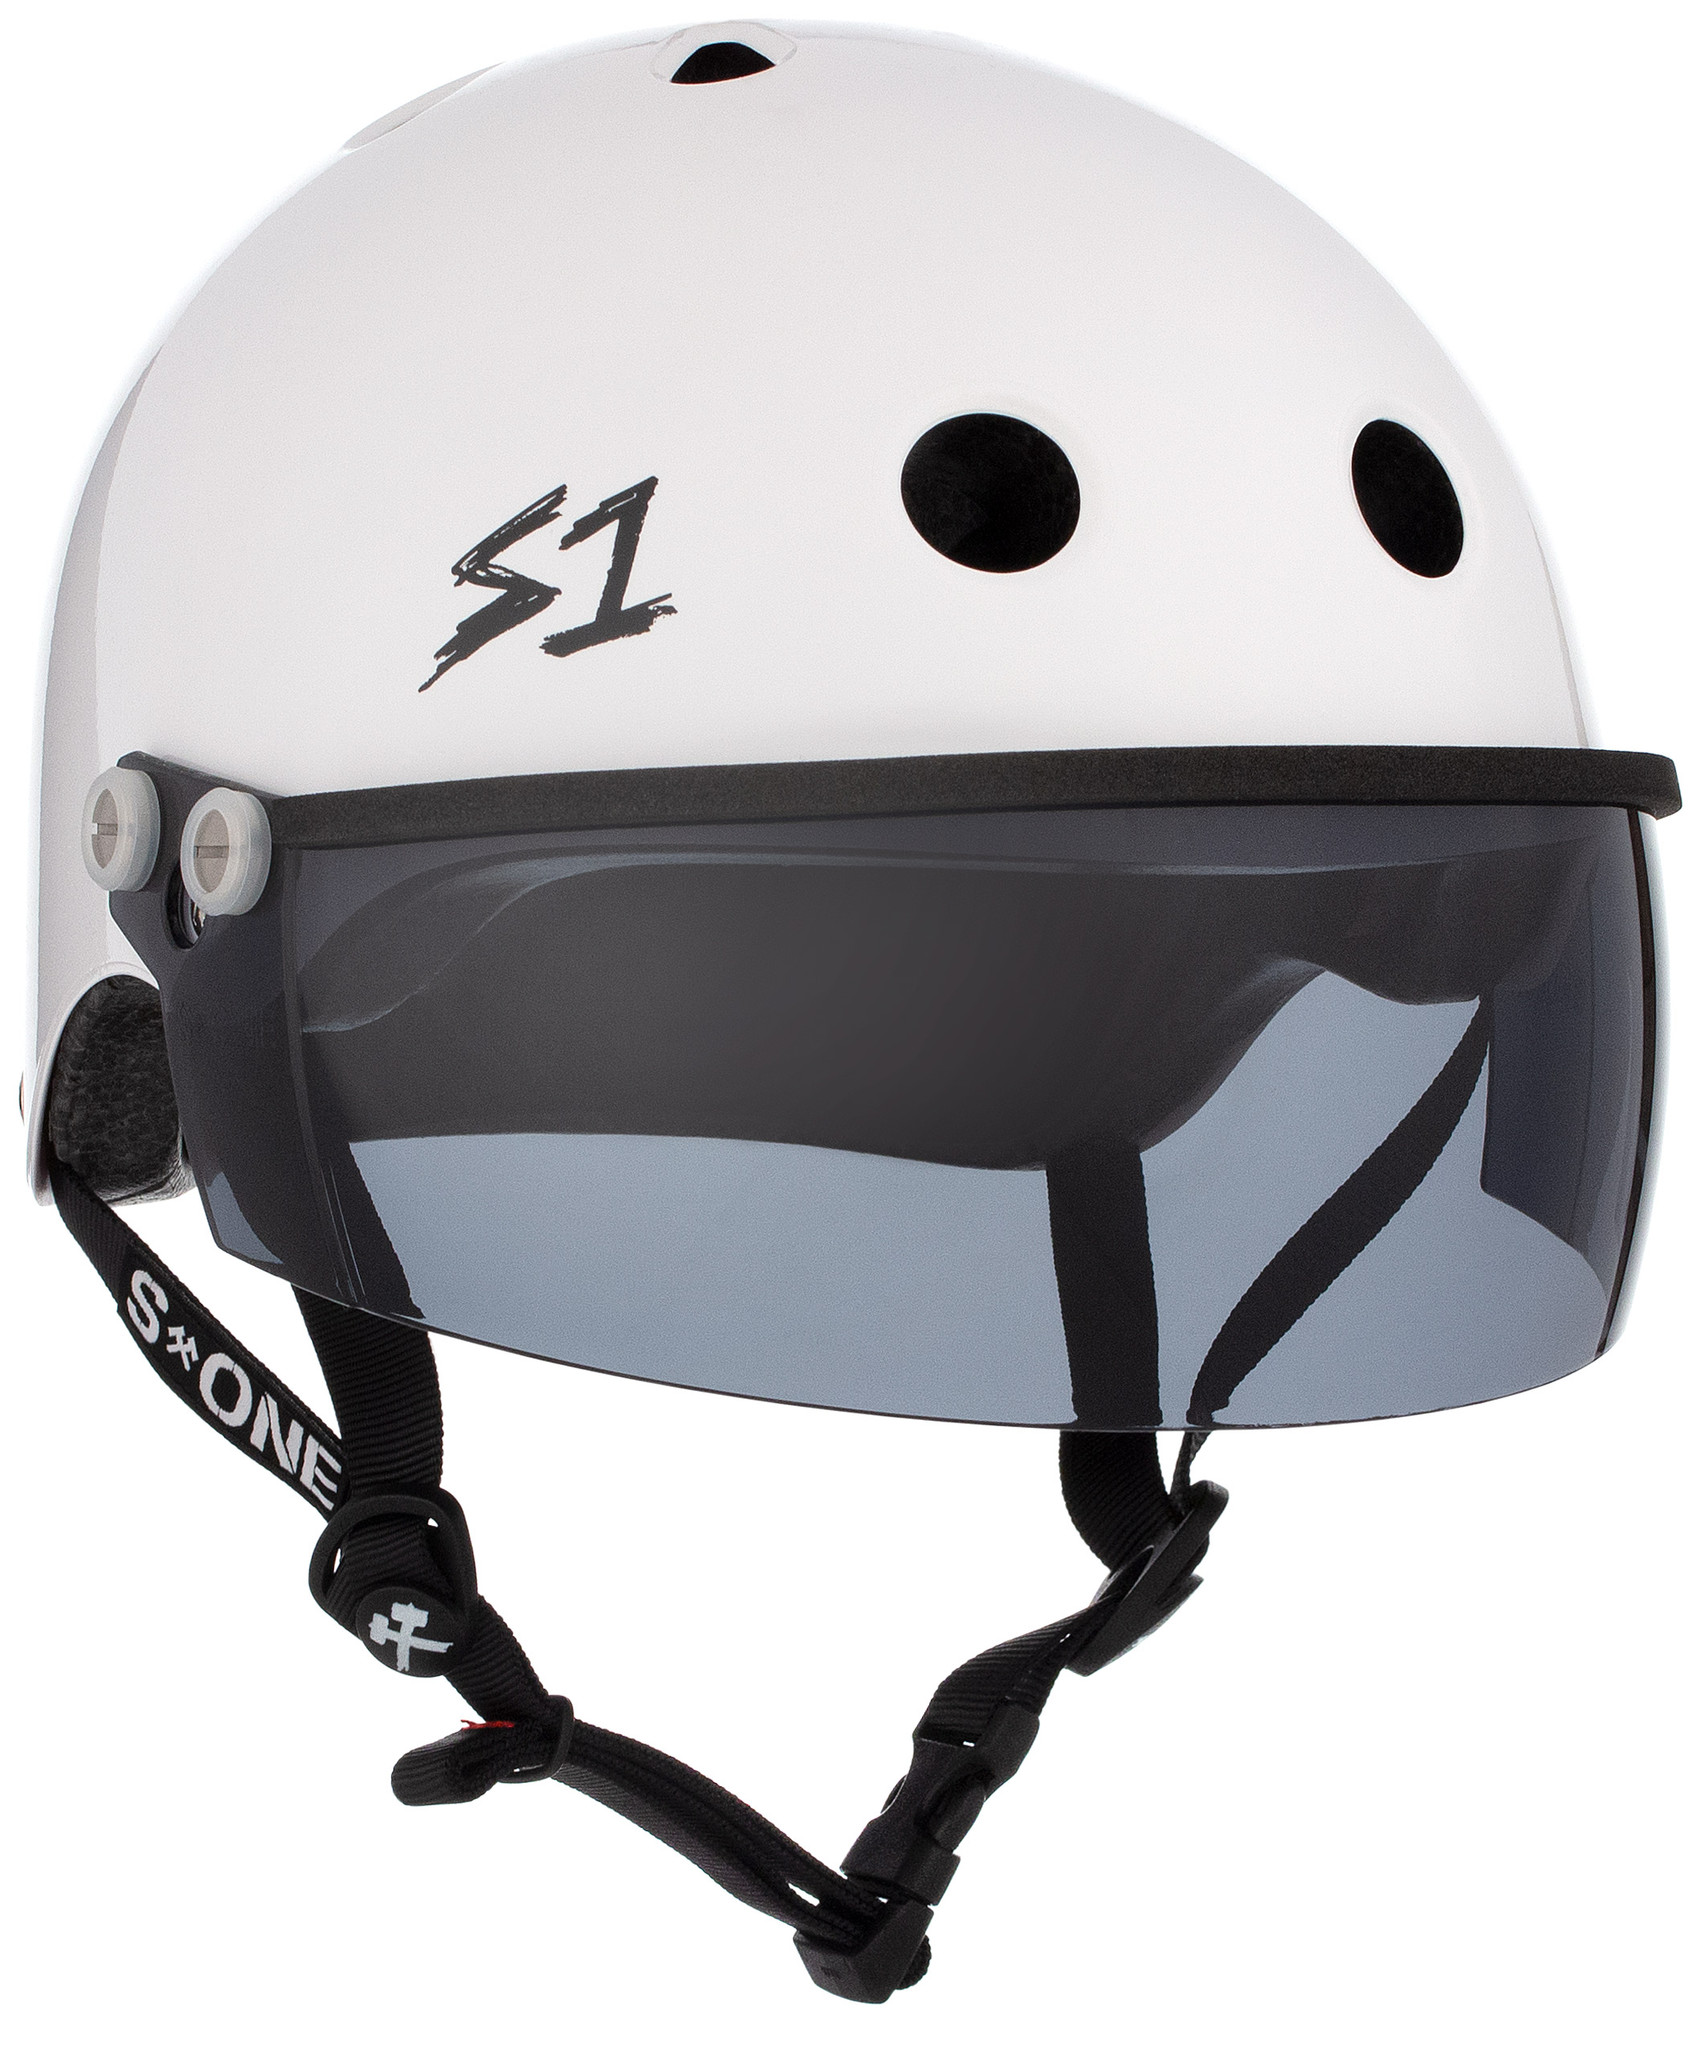 White Gloss Helmet, Roller Skate Helmet